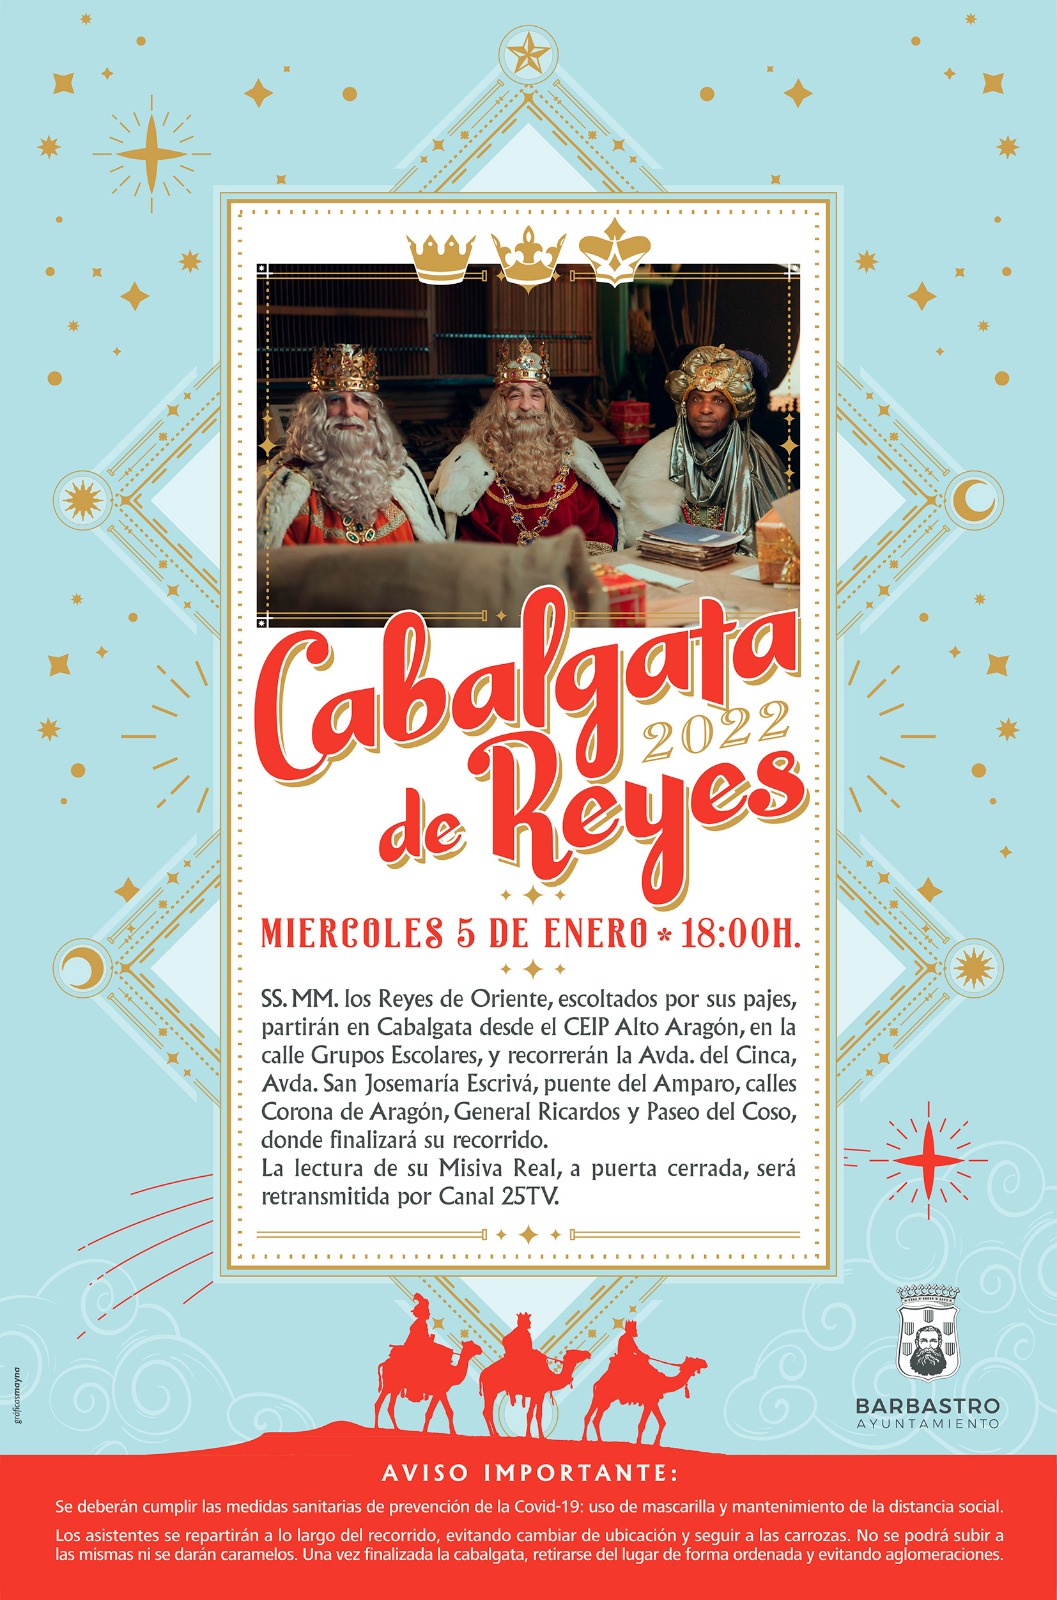 Los Reyes Magos llegarán el 5 de enero a Barbastro en un Cabalgata adaptada a la situación sanitaria